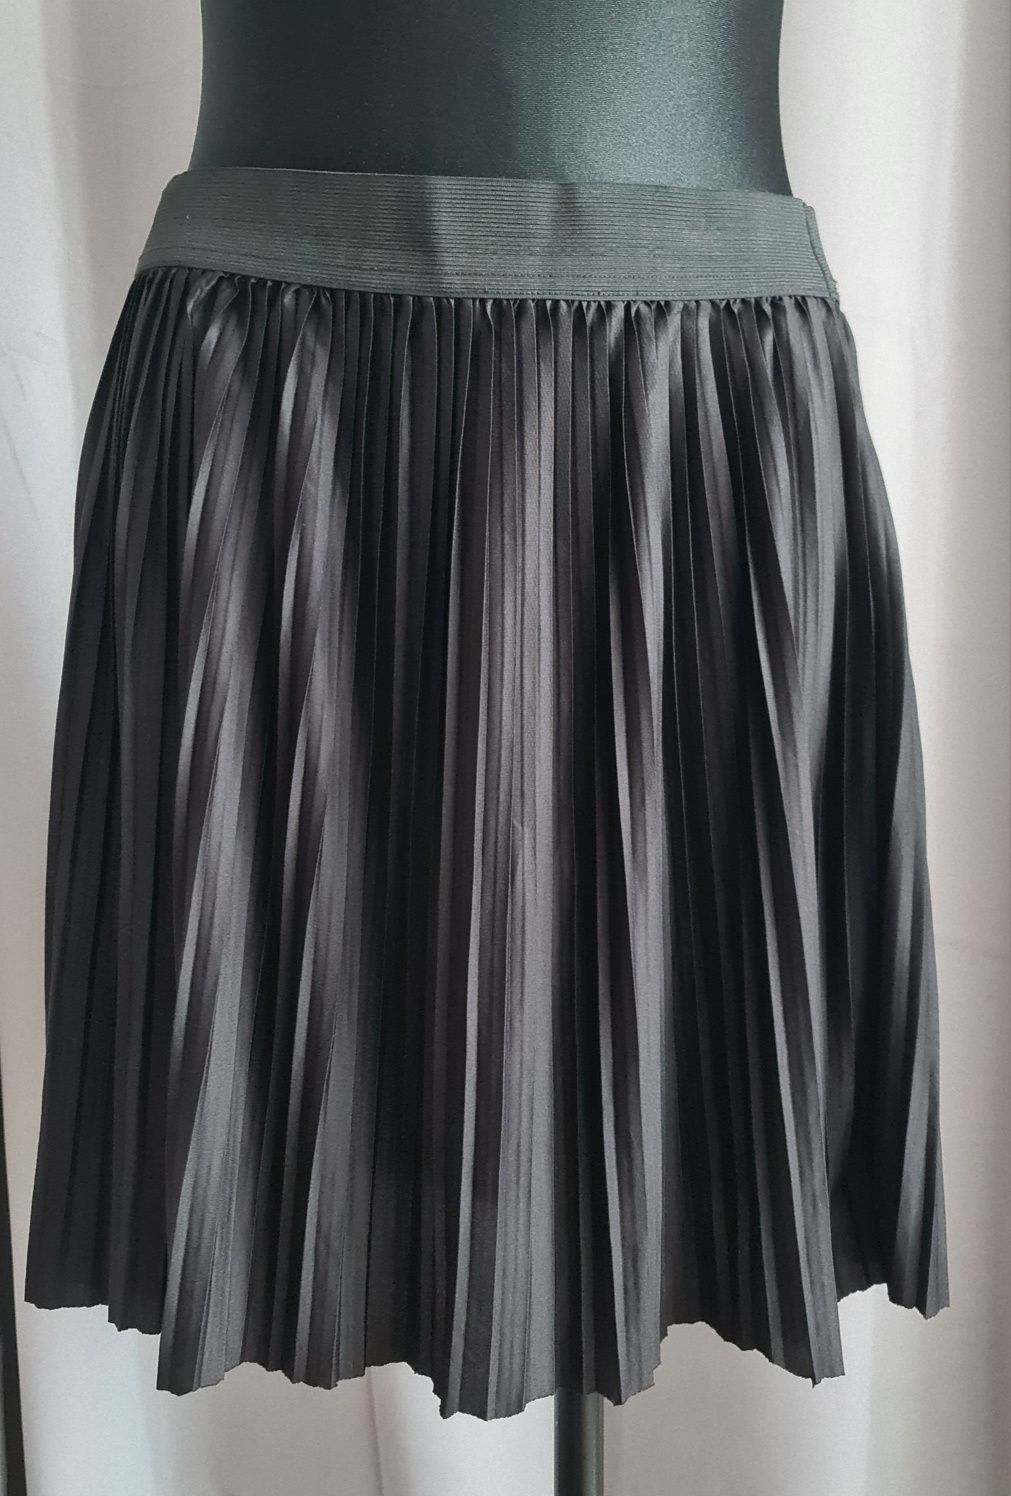 Czarna plisowana spódnica na gumce, Jacqueline de Yong, rozmiar XL